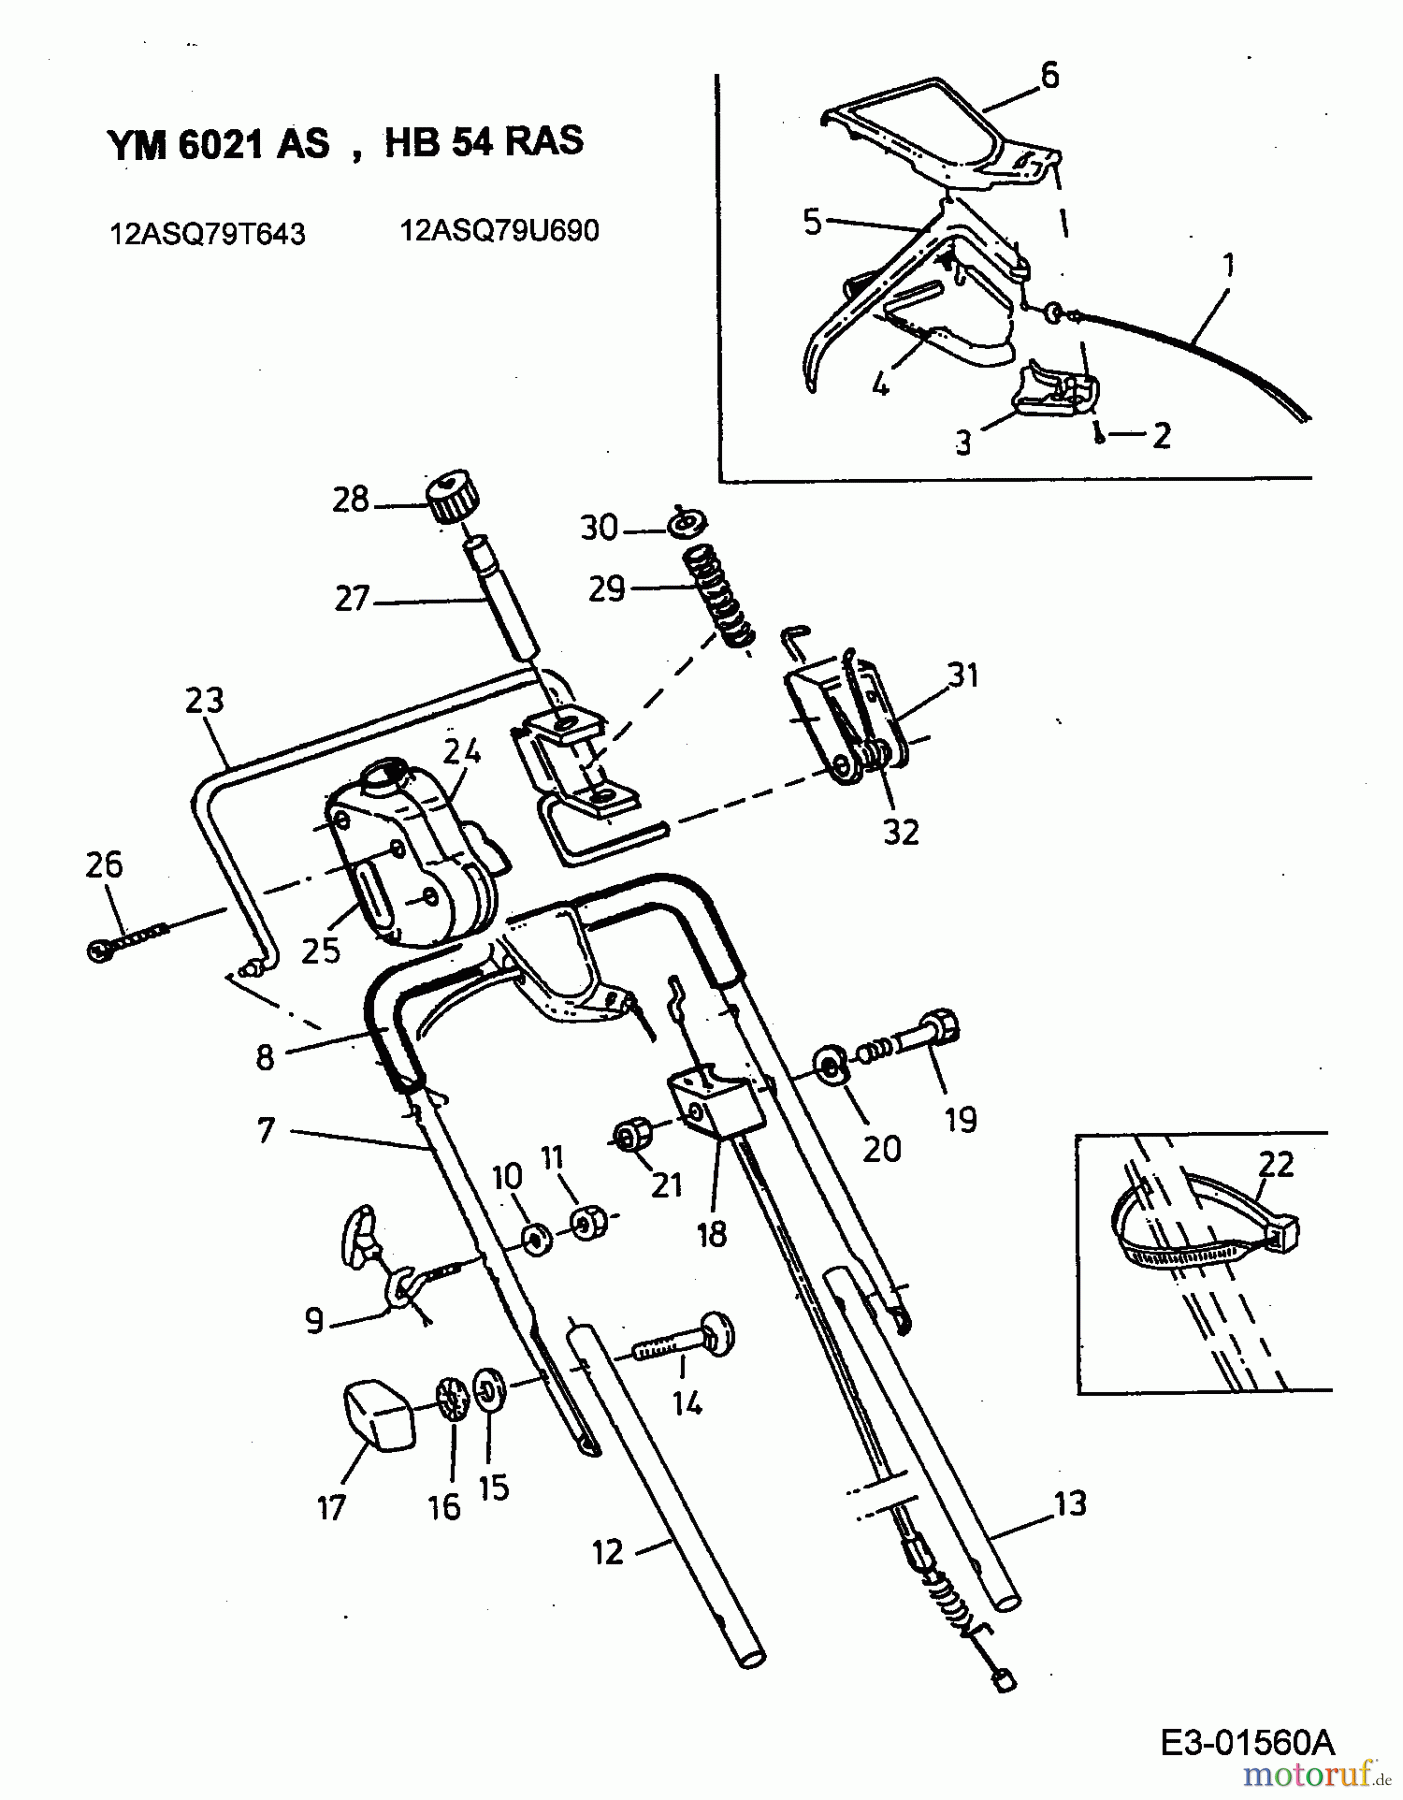  Gutbrod Petrol mower self propelled HB 54 RAS 12ASQ79U690  (2001) Upper handle